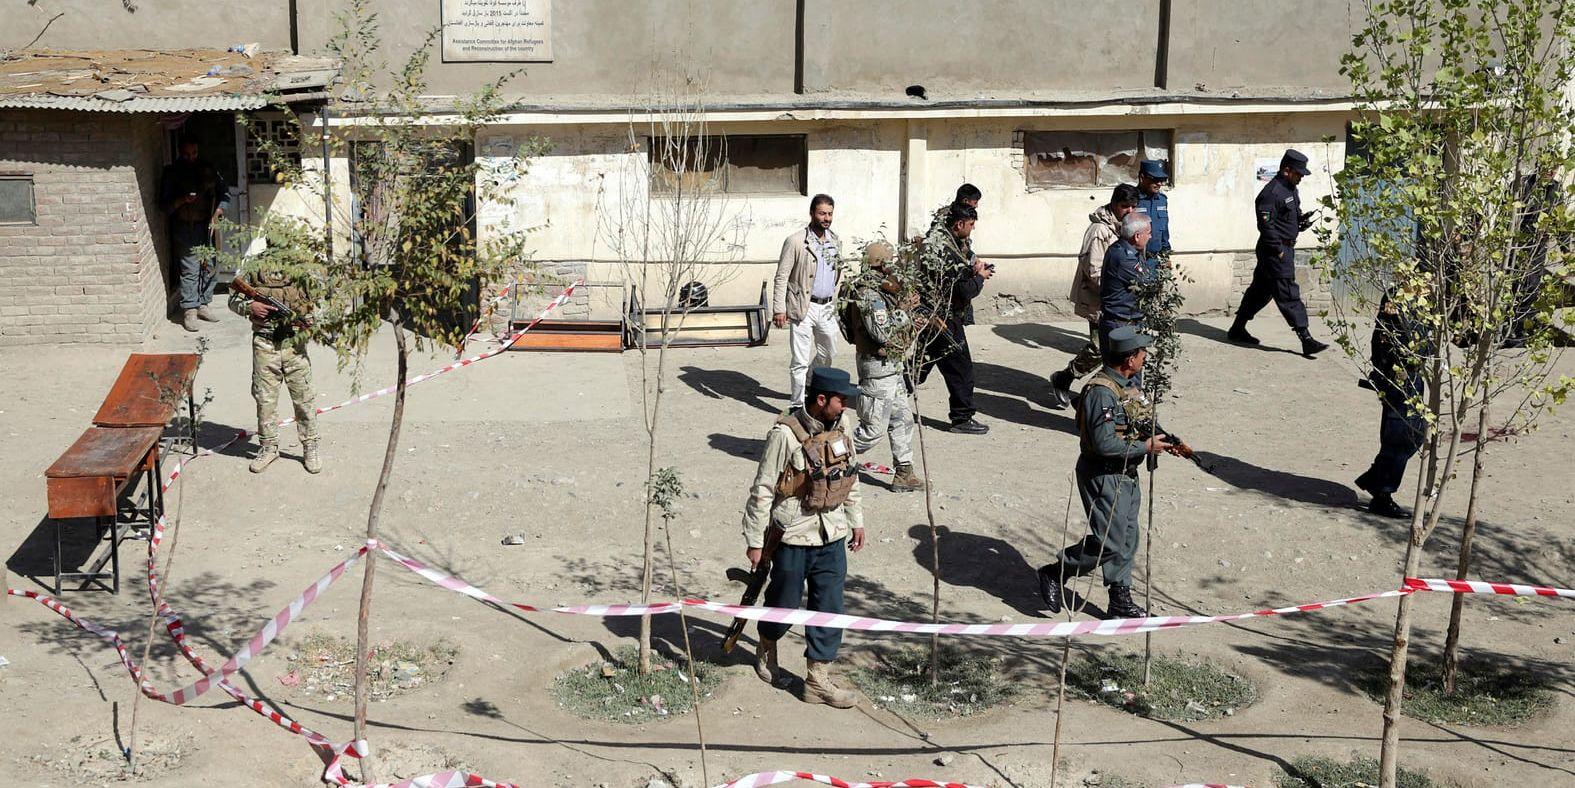 Säkerhetsstyrkor söker igenom ett område i närheten av en vallokal i Afghanistans huvudstad Kabul sedan en bomb detonerat vid lokalen.